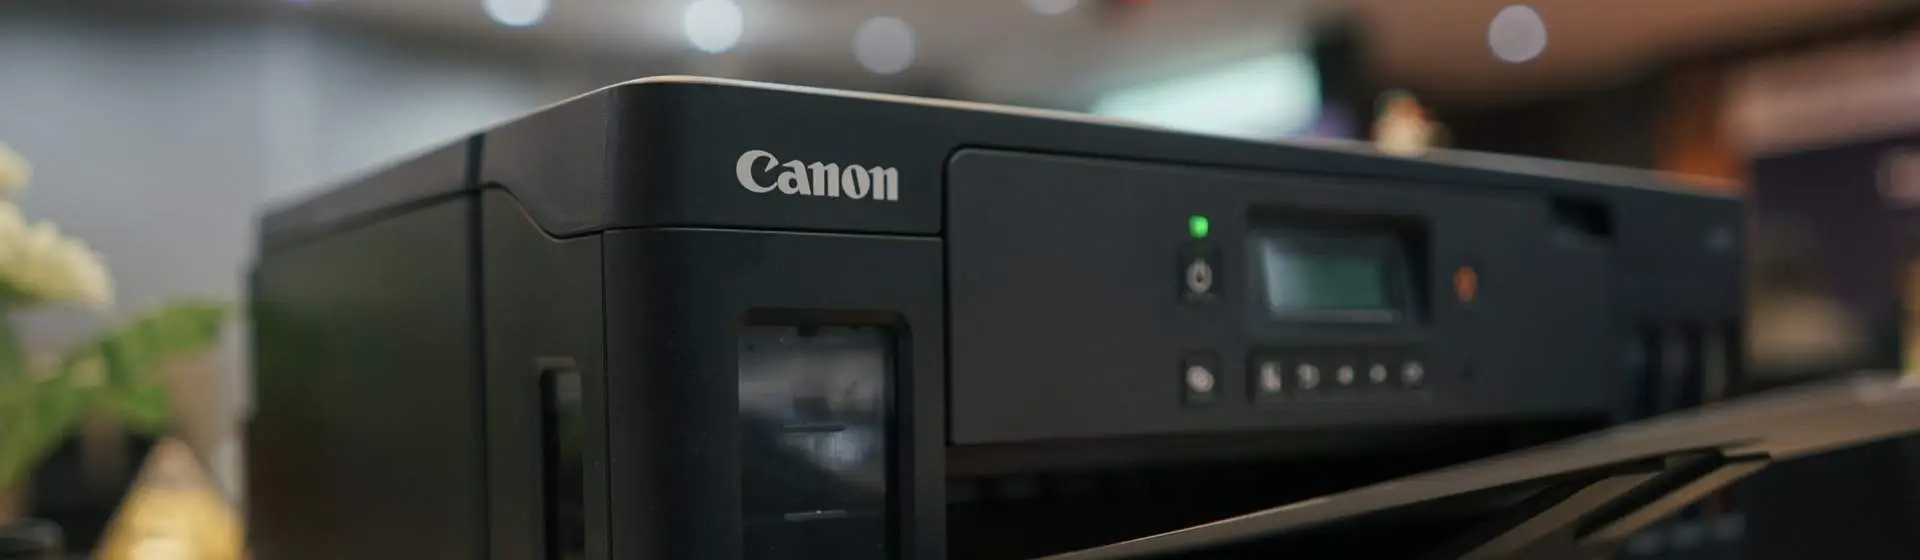 Melhor impressora Canon: 6 bons modelos para comprar em 2022